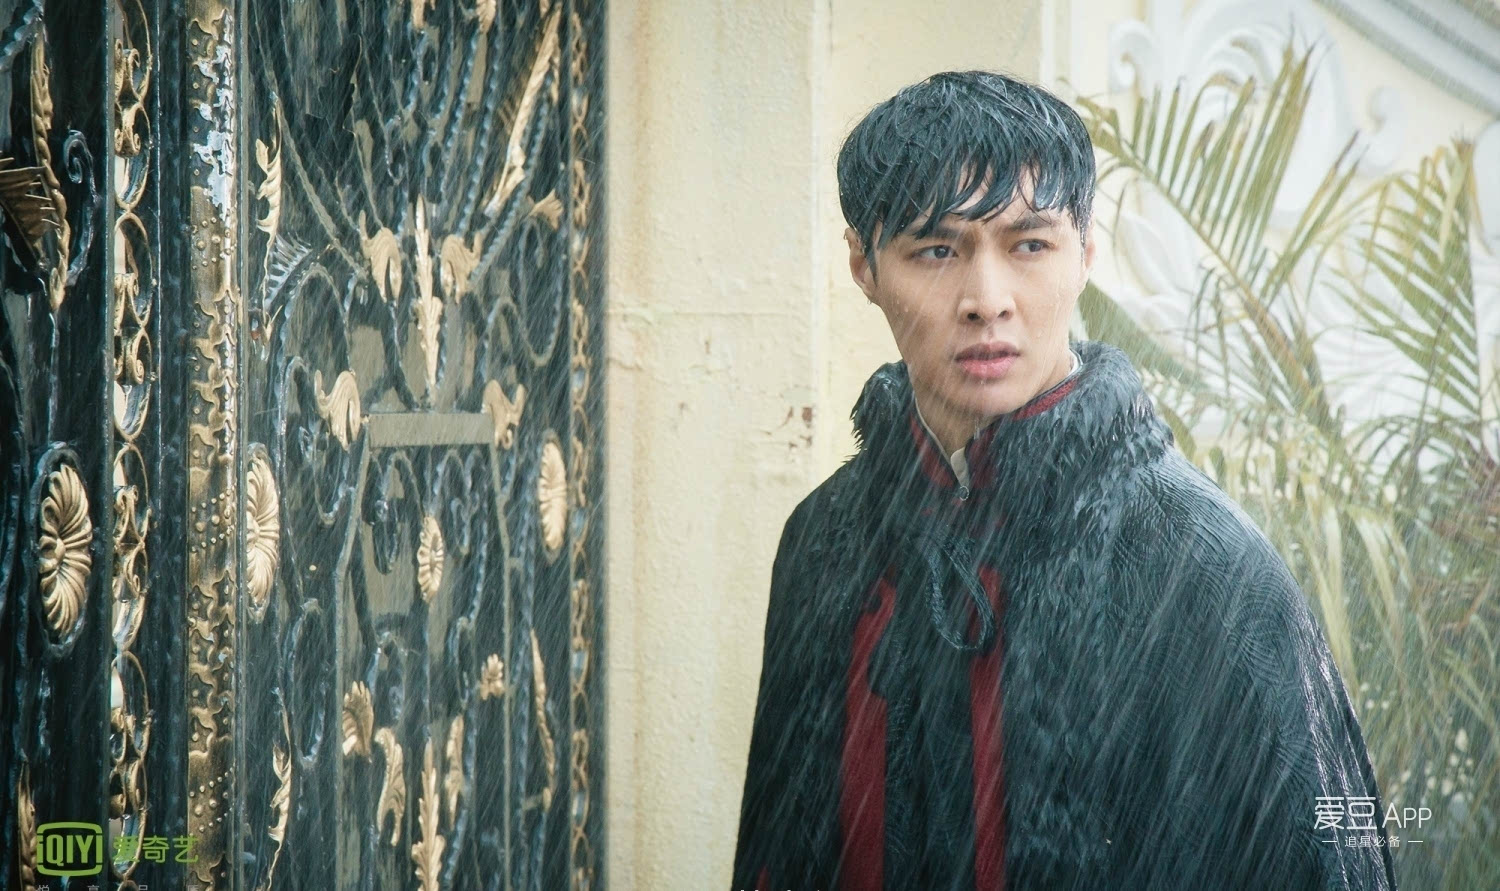 在昨晚更新的《老九门》中,张艺兴饰演的二月红为救丫头在大雨中向